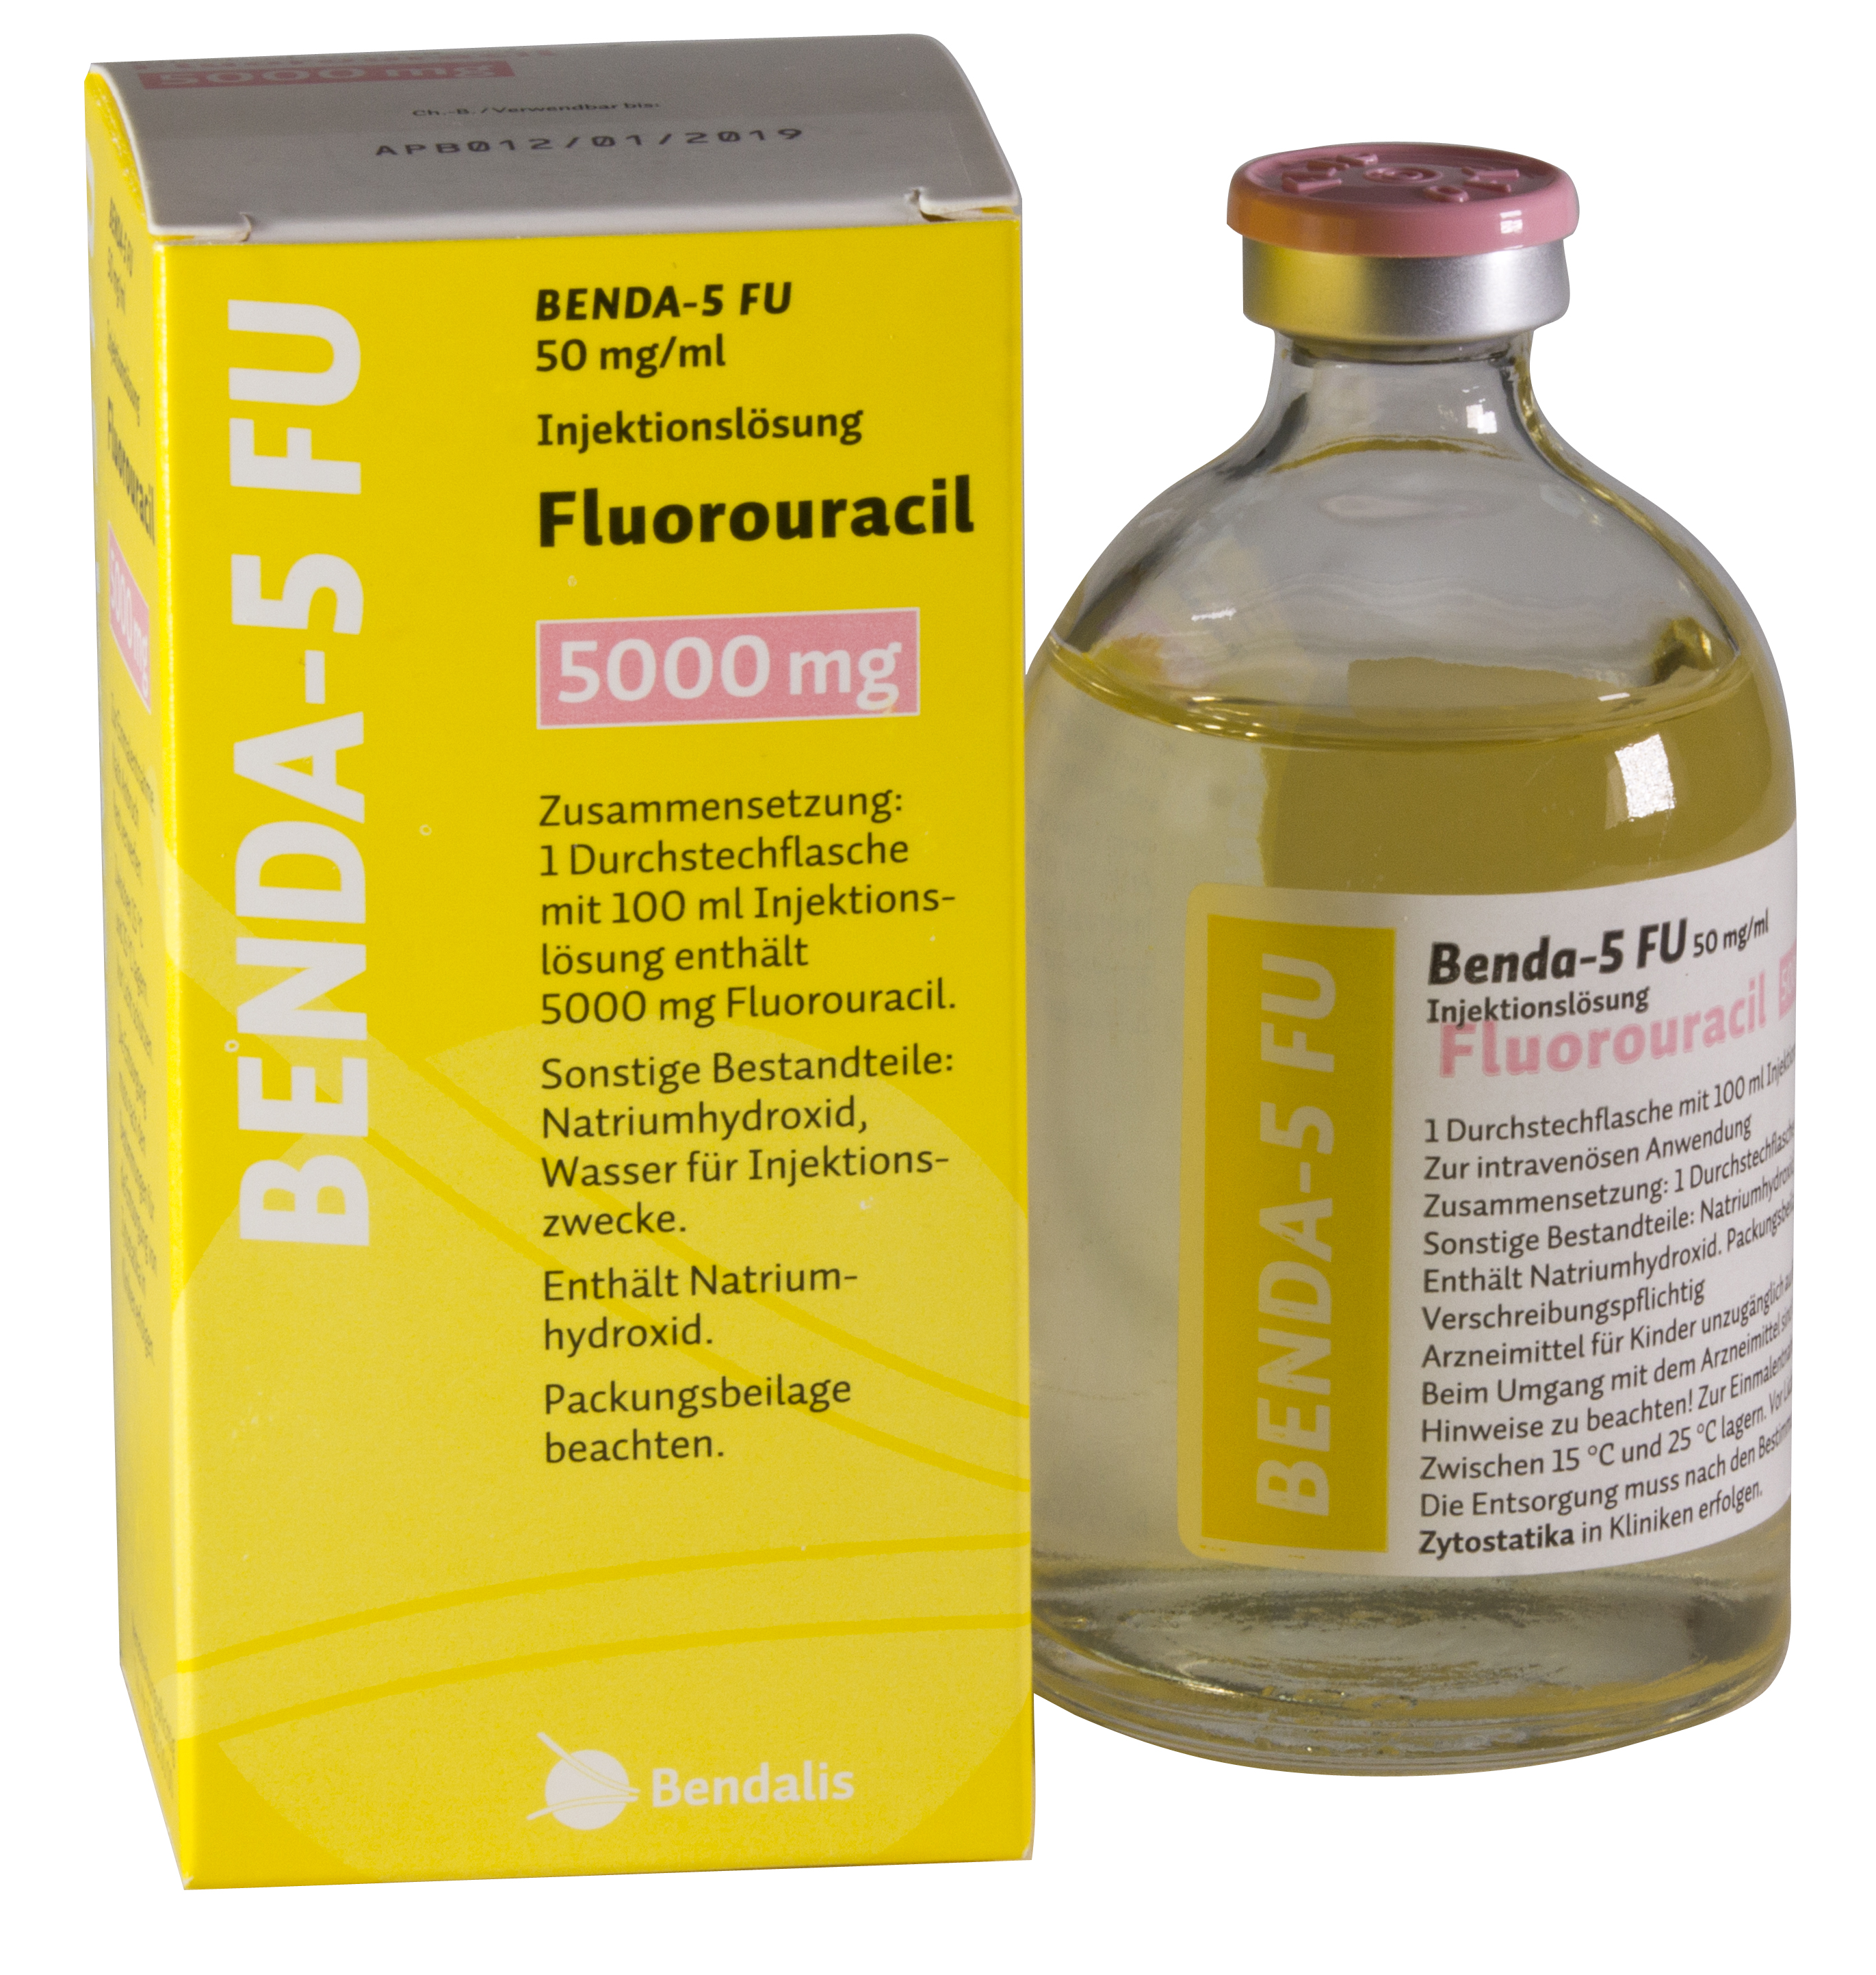 Benda 5 FU 50 mg/ml (5-Fluorouracil)